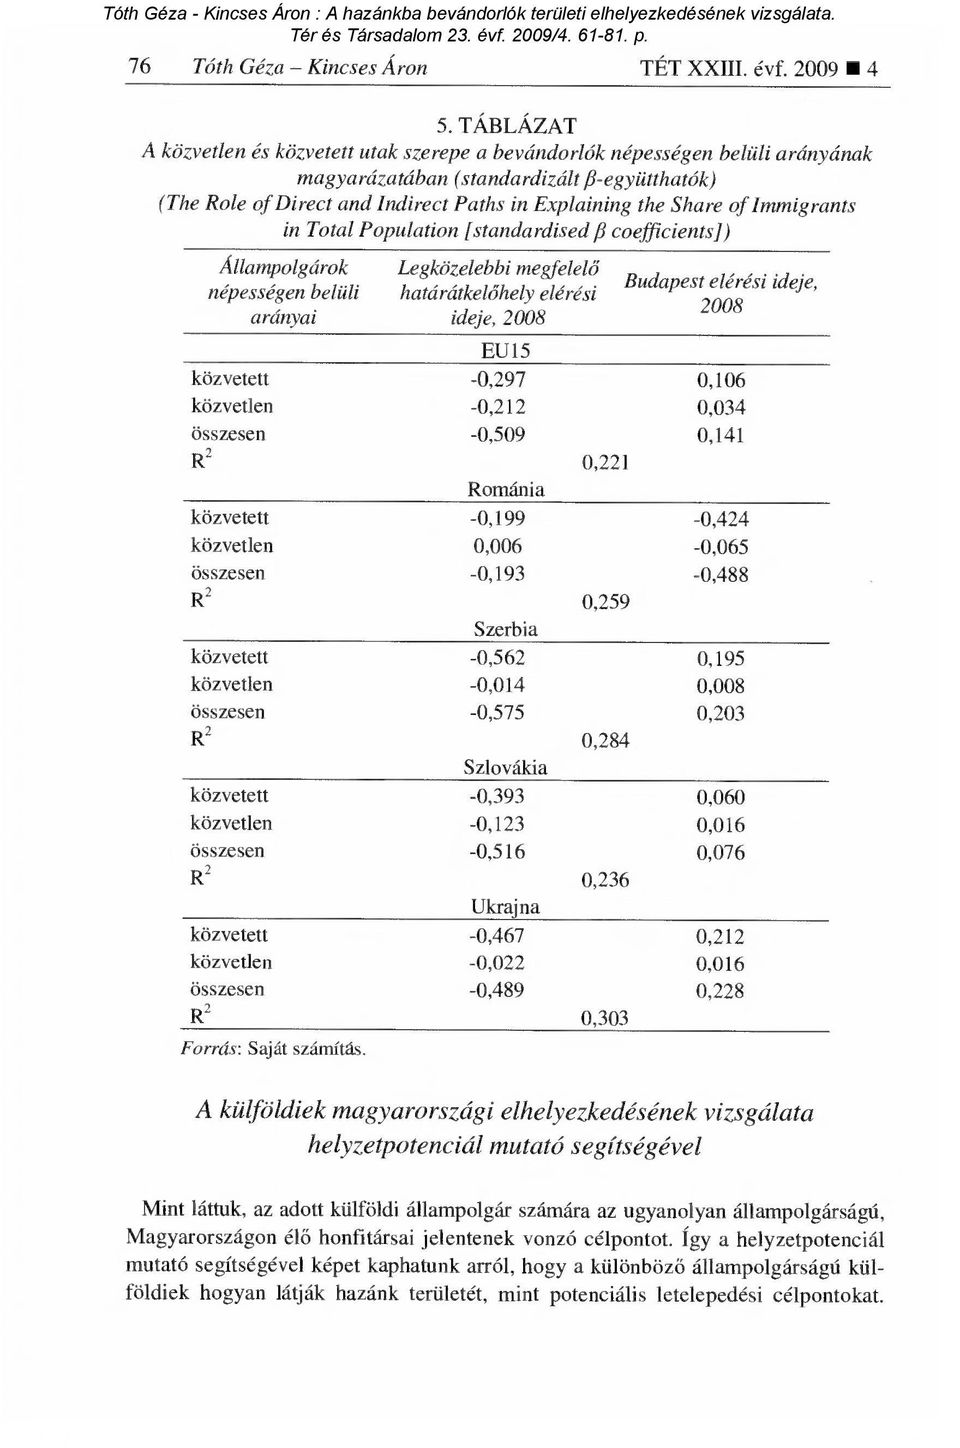 of Immigrants in Total Population [standardised/3 coefficients] ) Állampolgárok népességen belüli arányai Legközelebbi megfelel ő határátkelőhely elérési ideje, 2008 Budapest elérési ideje, 2008 EU